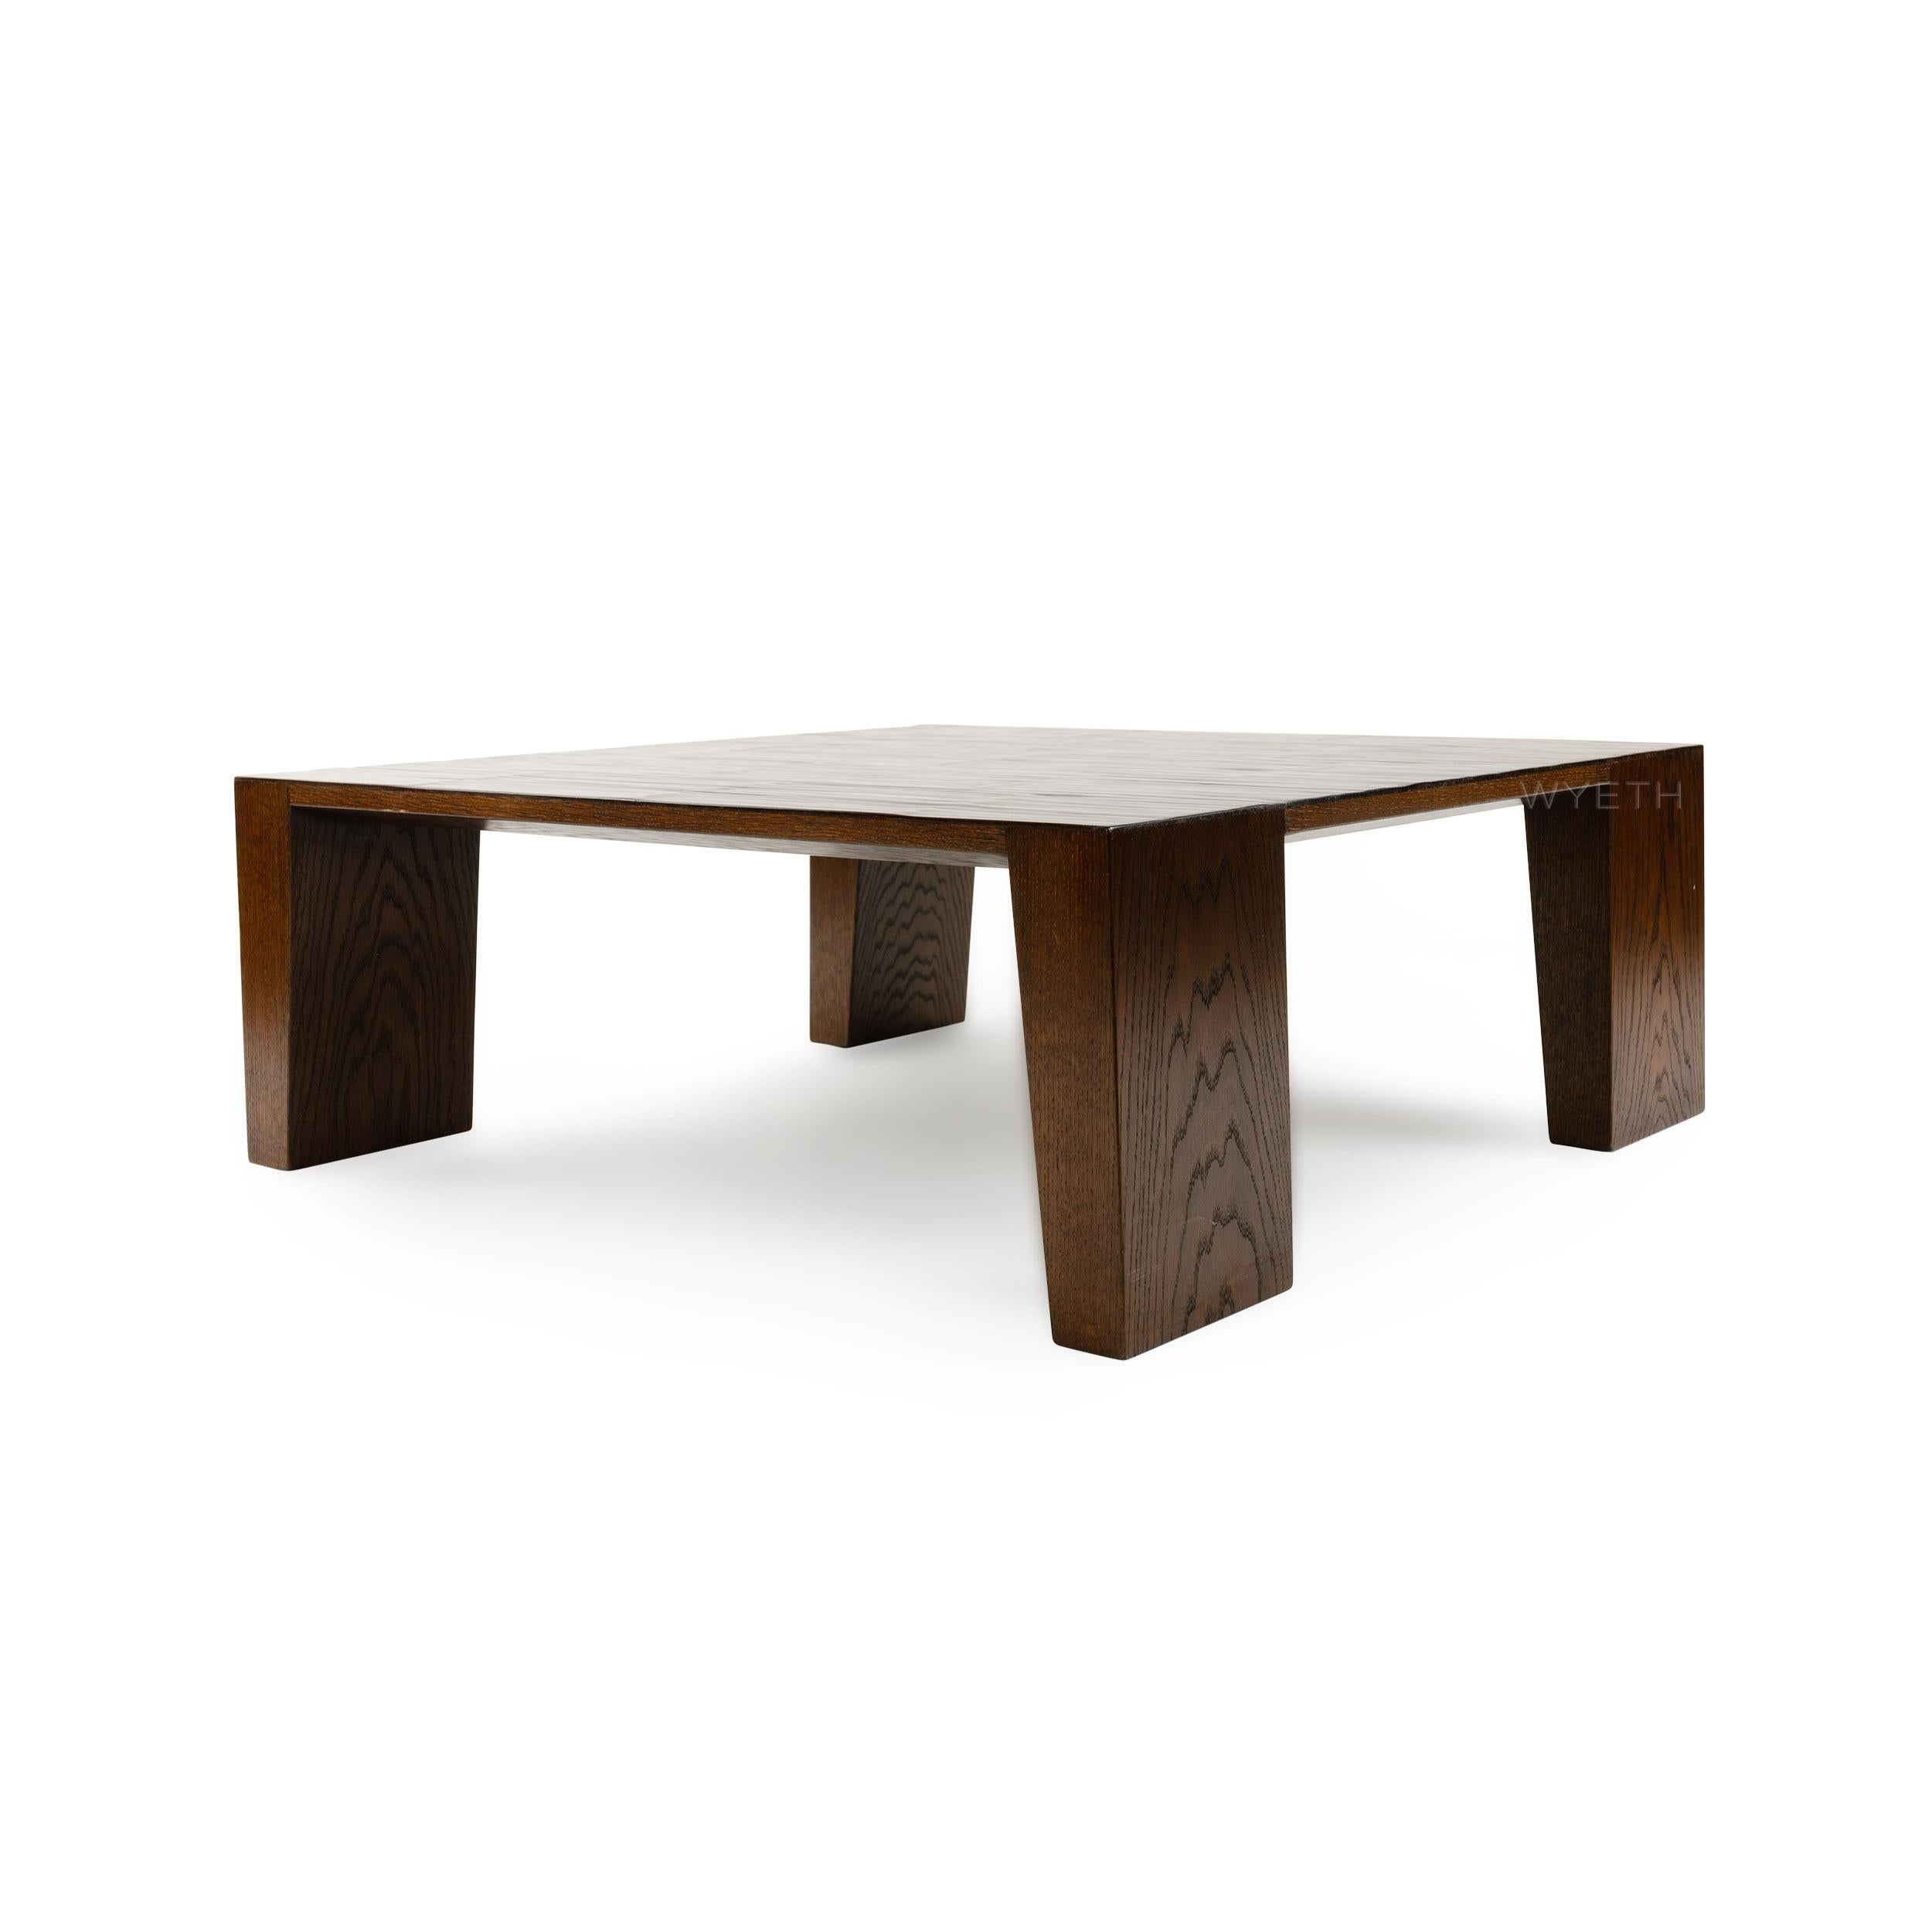 wyeth coffee table